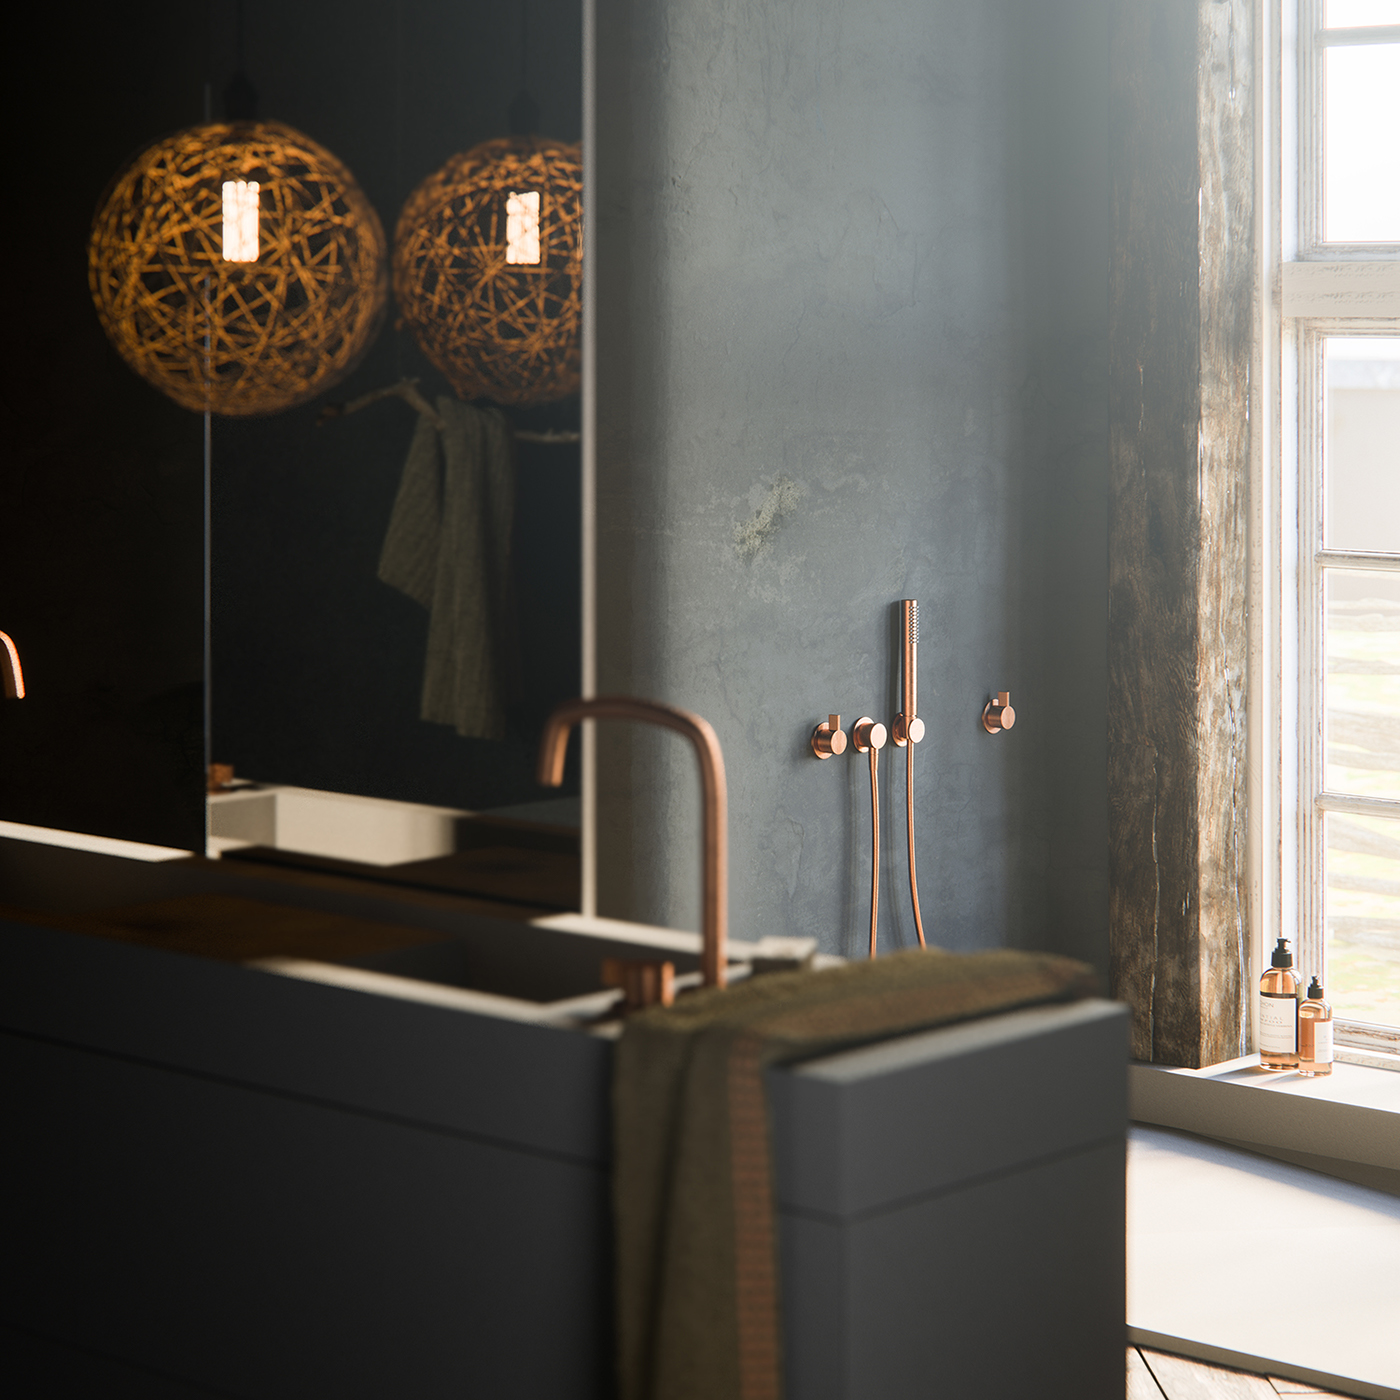 Interior bathroom finca Render vray dark rustic wood DoubleAye design